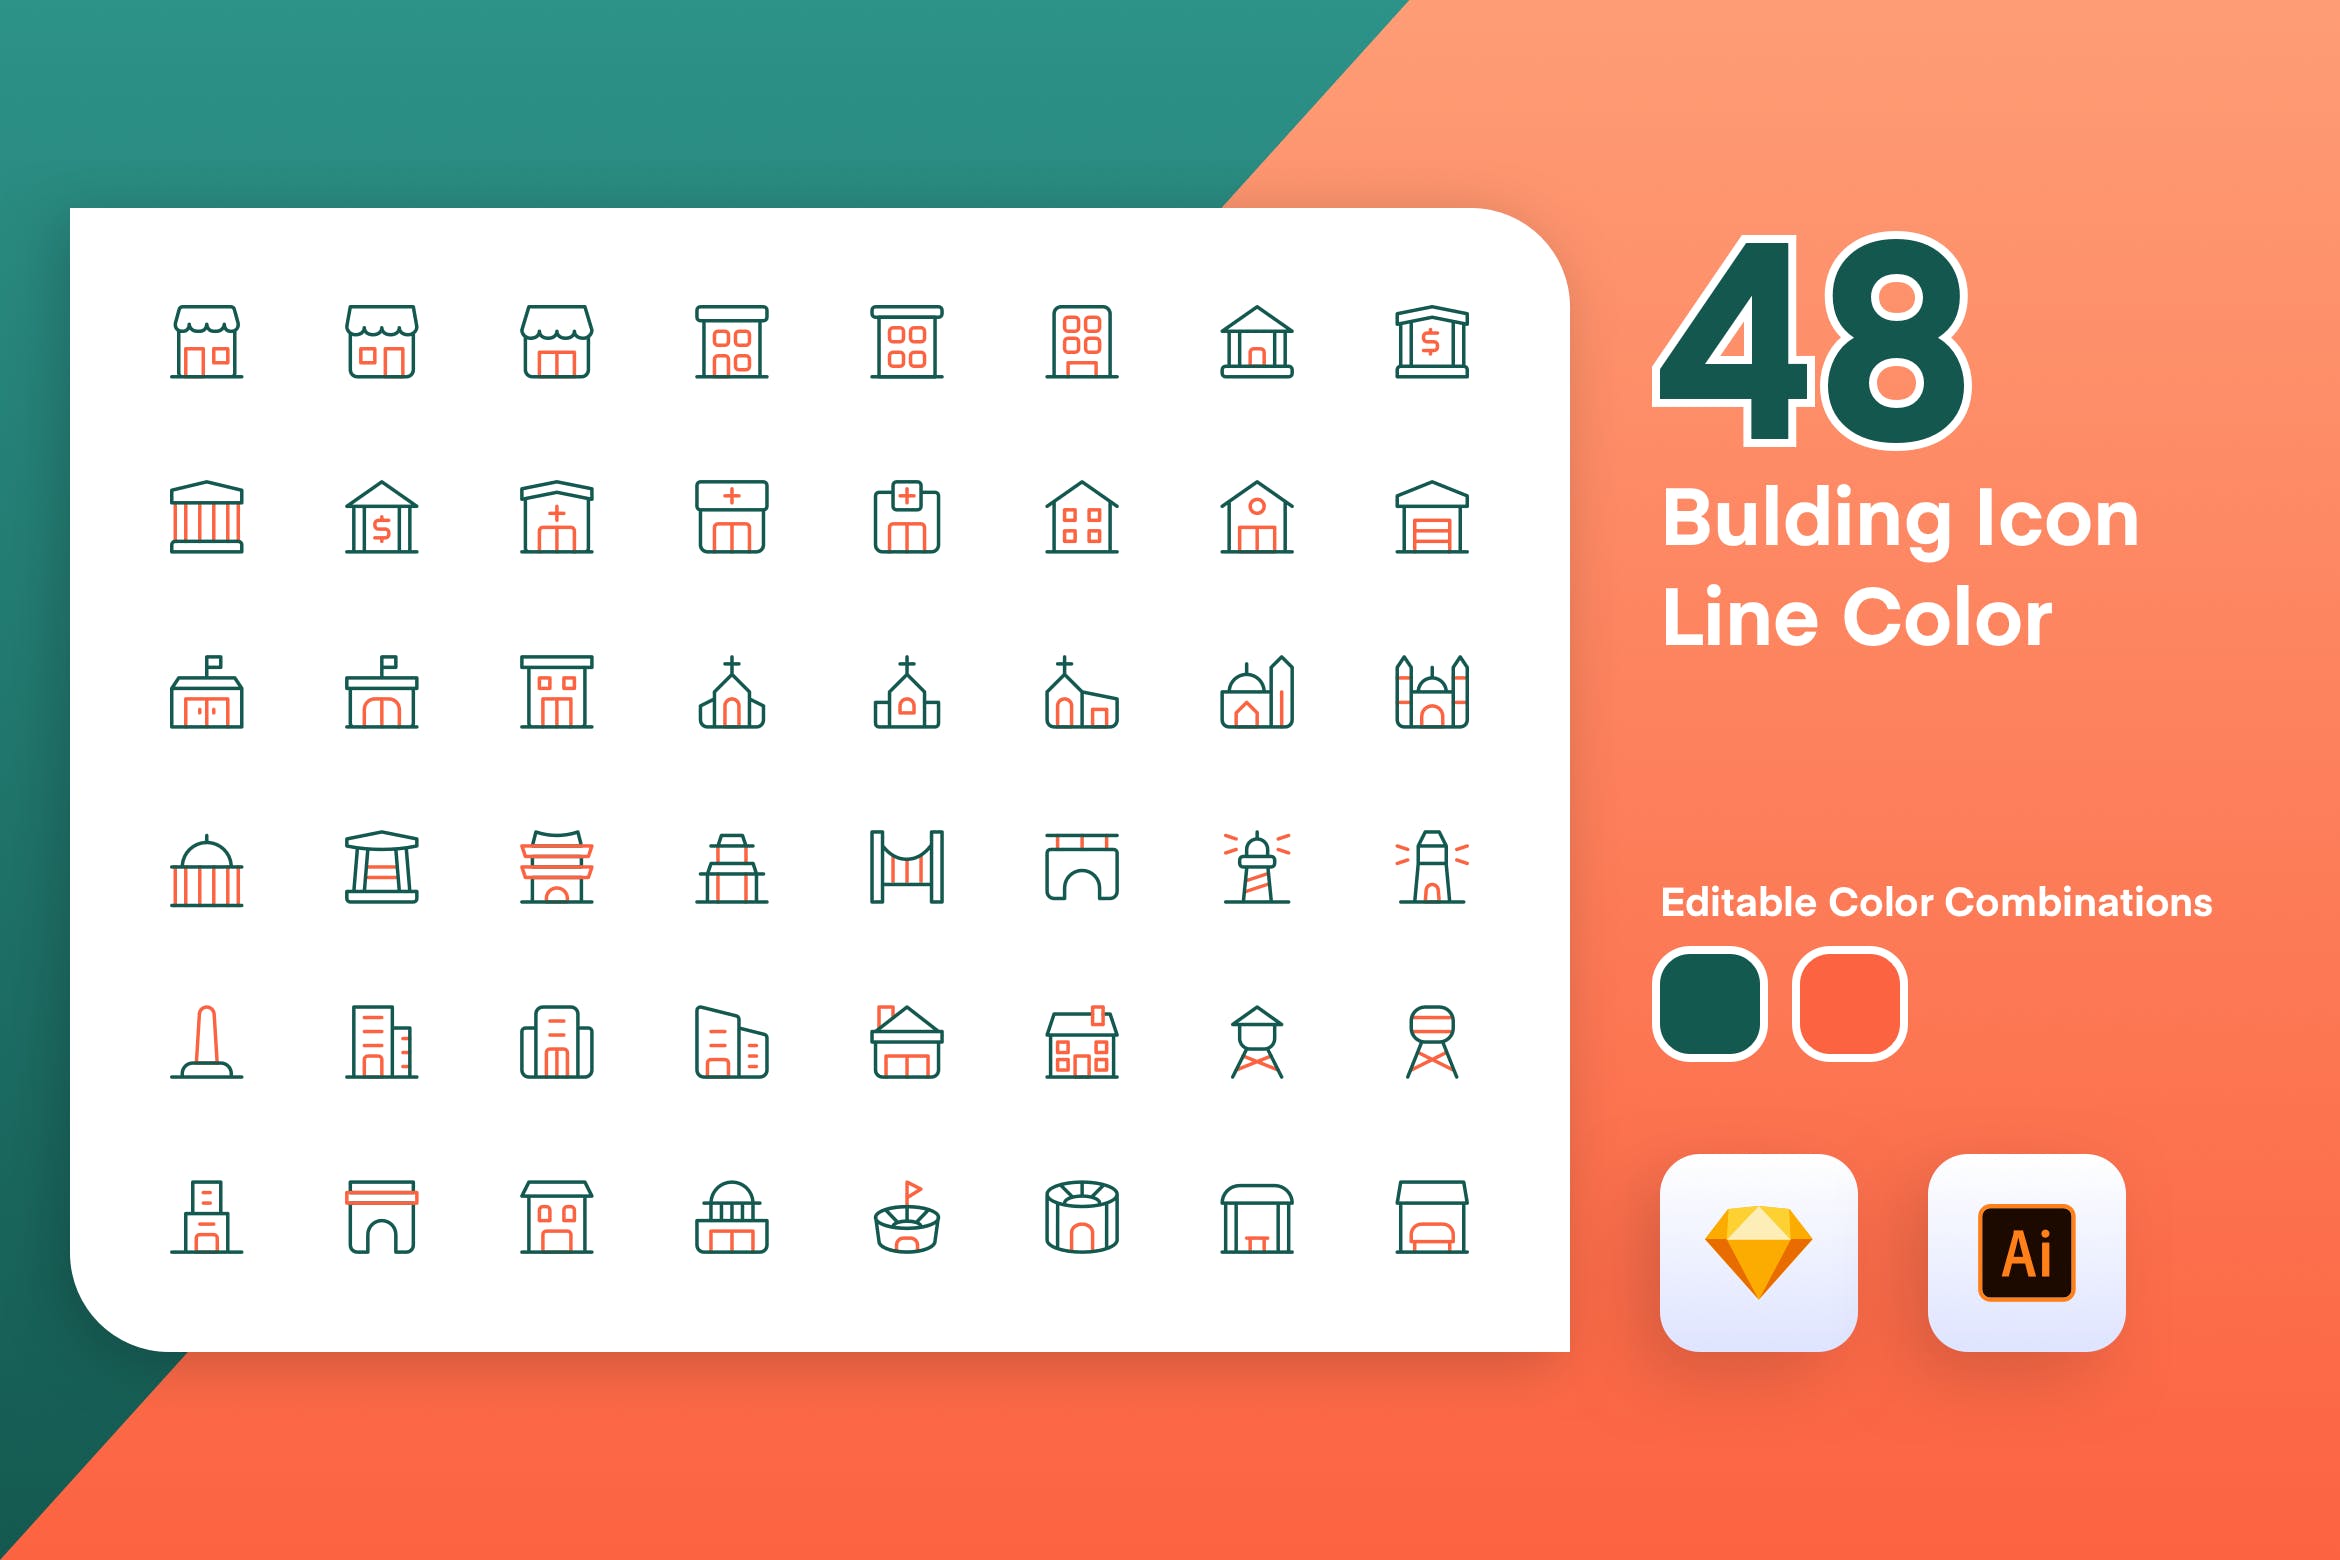 48枚建筑主题彩色矢量线性16设计素材网精选图标素材 Building Icon Line Color插图